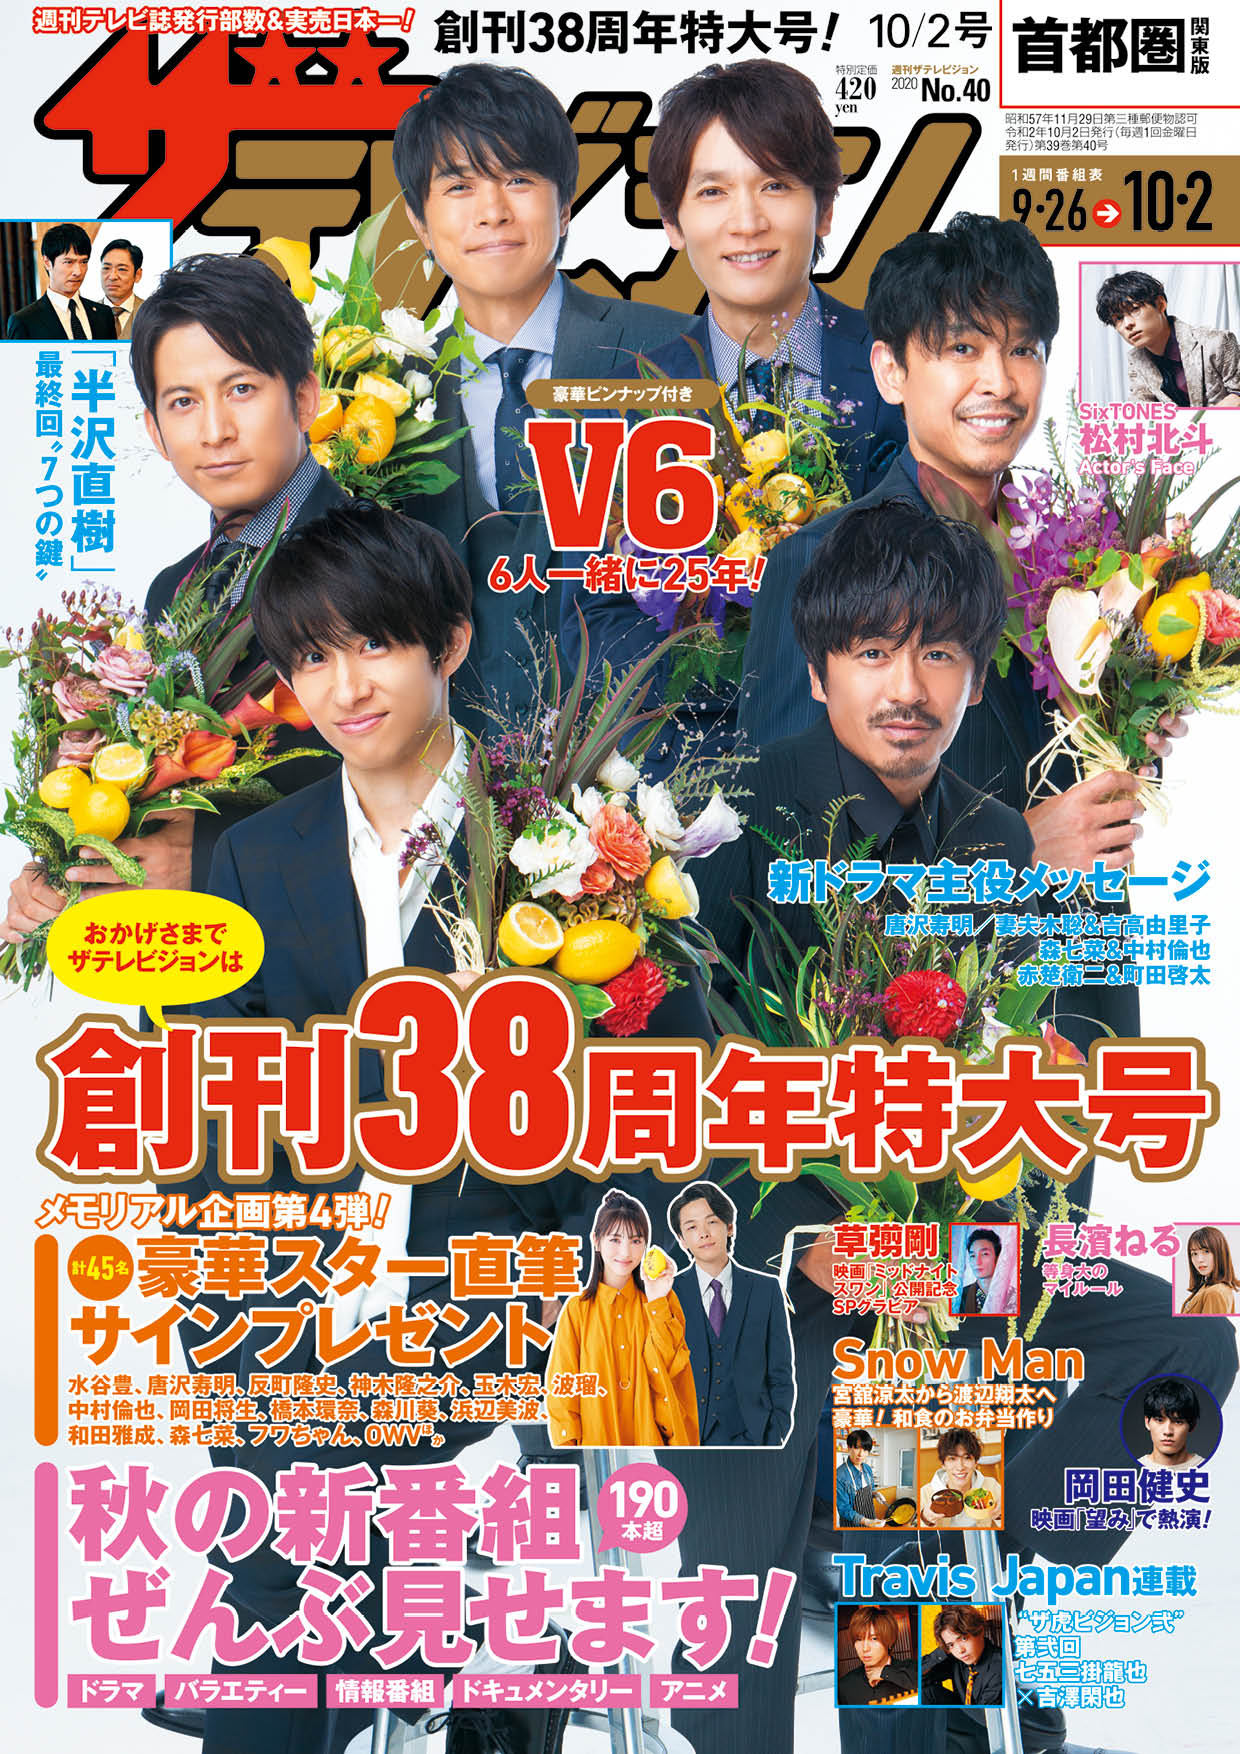 画像は、2020年9月23日発売の「週刊ザテレビジョン」10／2号（KADOKAWA）